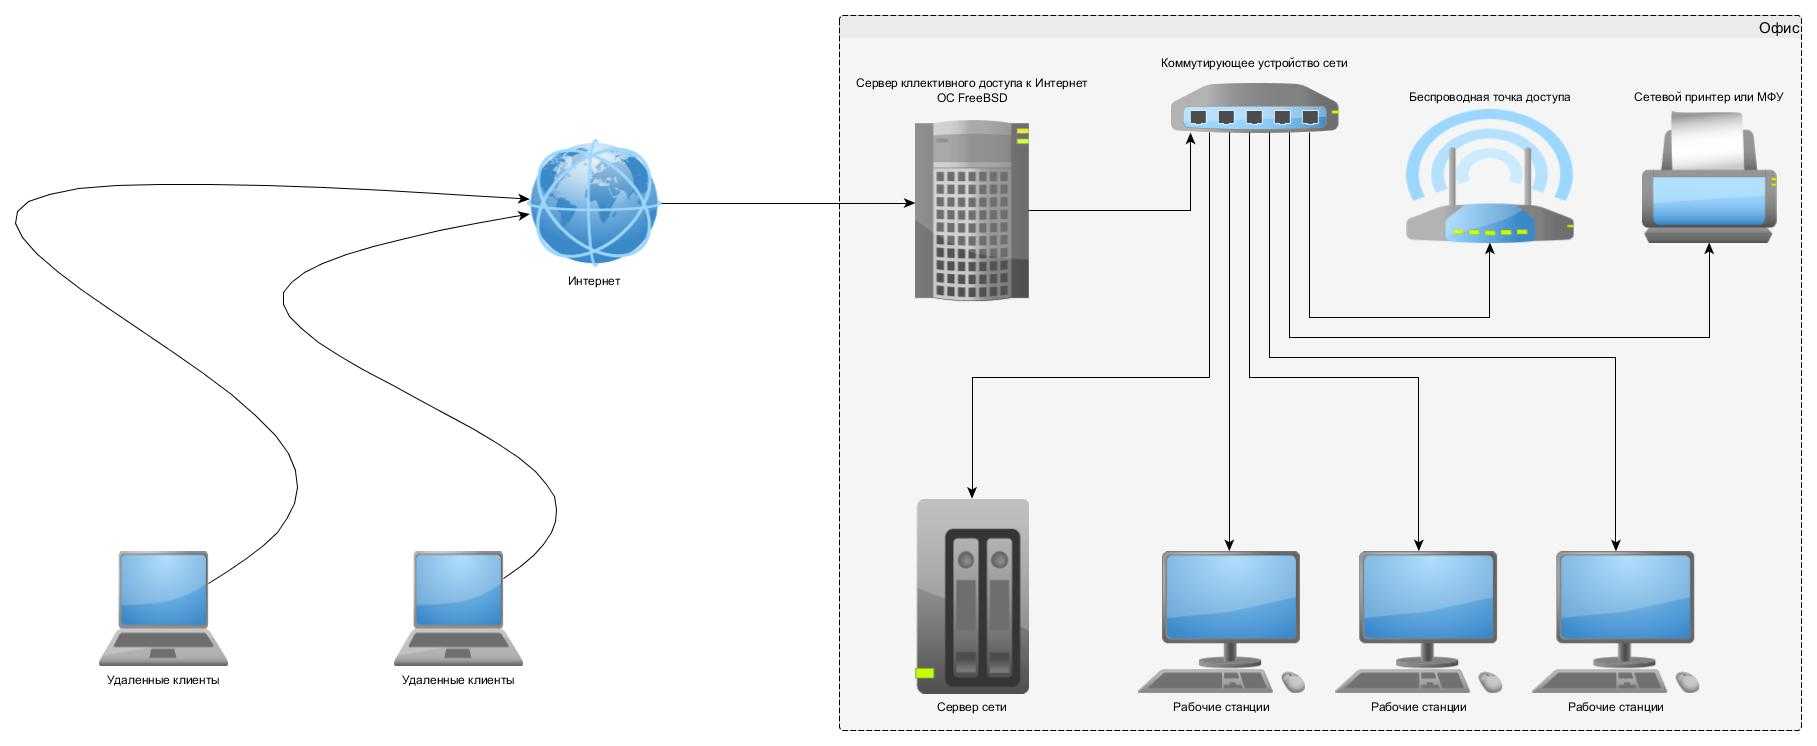 Другому электронные системы на. Сервер удаленного доступа схема подключения к сети. Ethernet концентратор схема. Схема подключения сервера к локальной сети. Схема локальной сети с удаленным доступом.